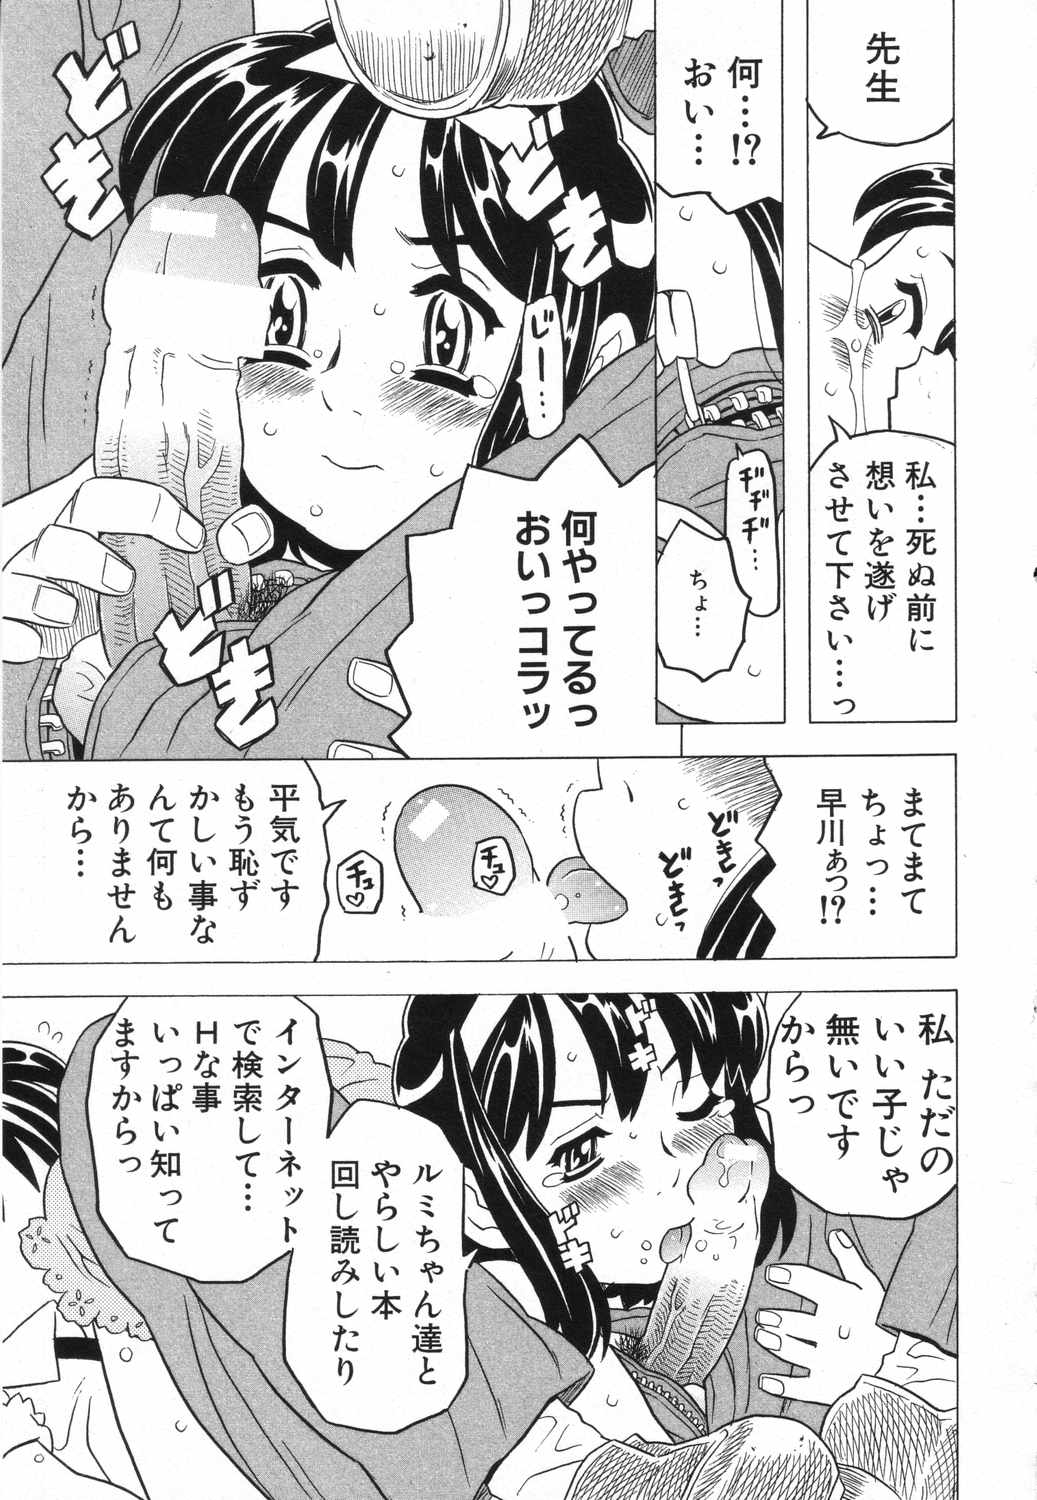 [Anthology] LOCO vol.5 Aki no Omorashi Musume Tokushuu page 16 full